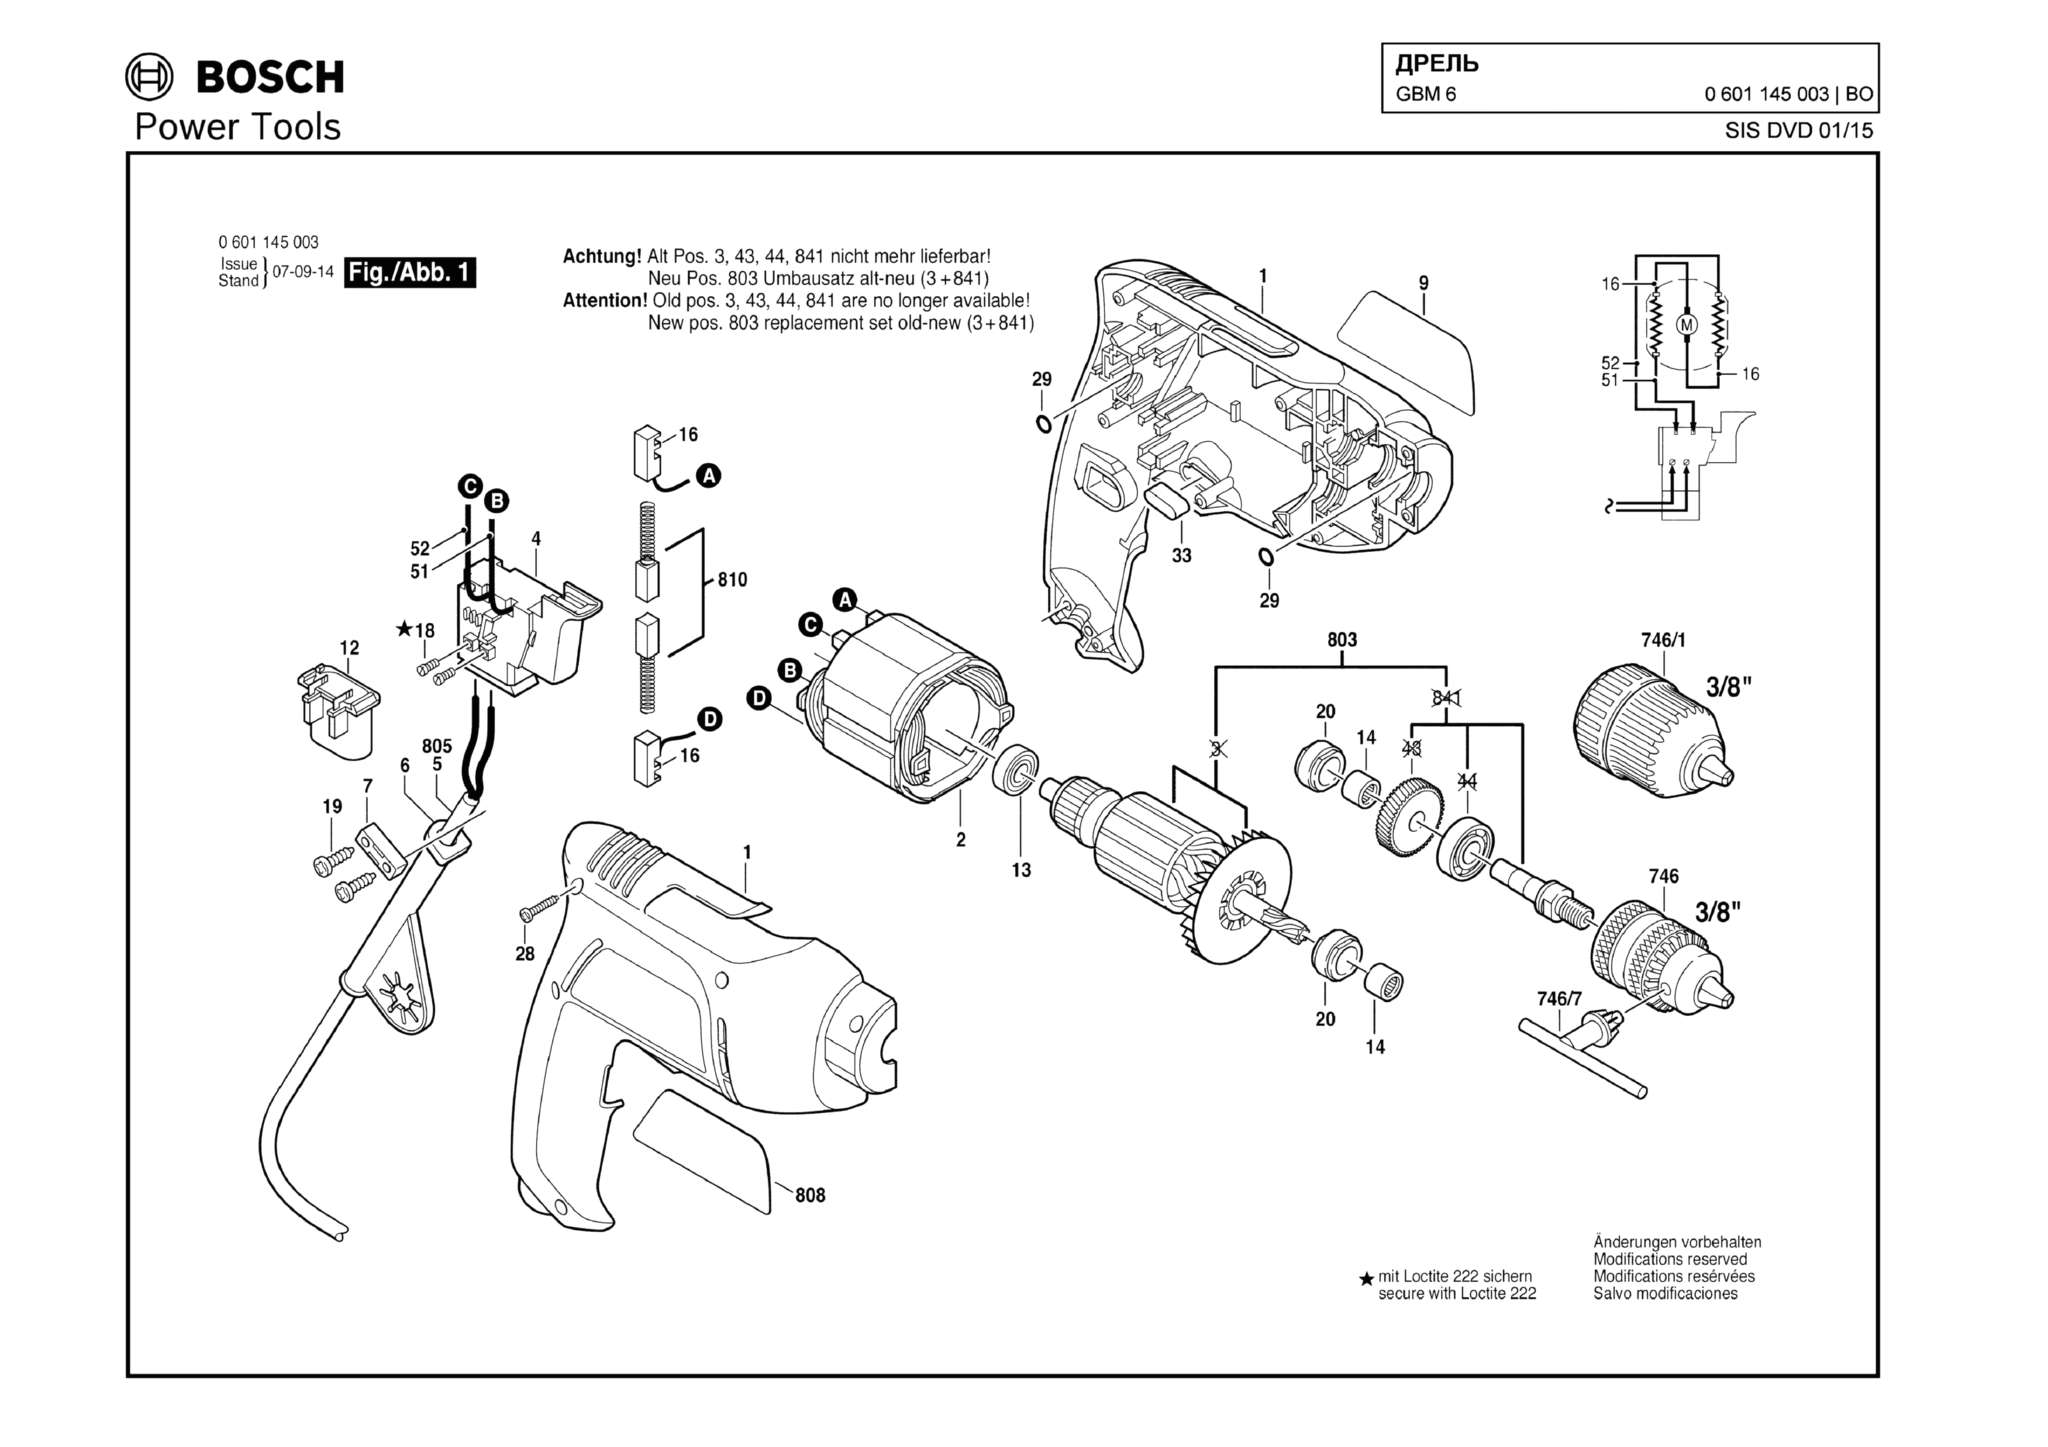 Запчасти, схема и деталировка Bosch GBM 6 (ТИП 0601145003)